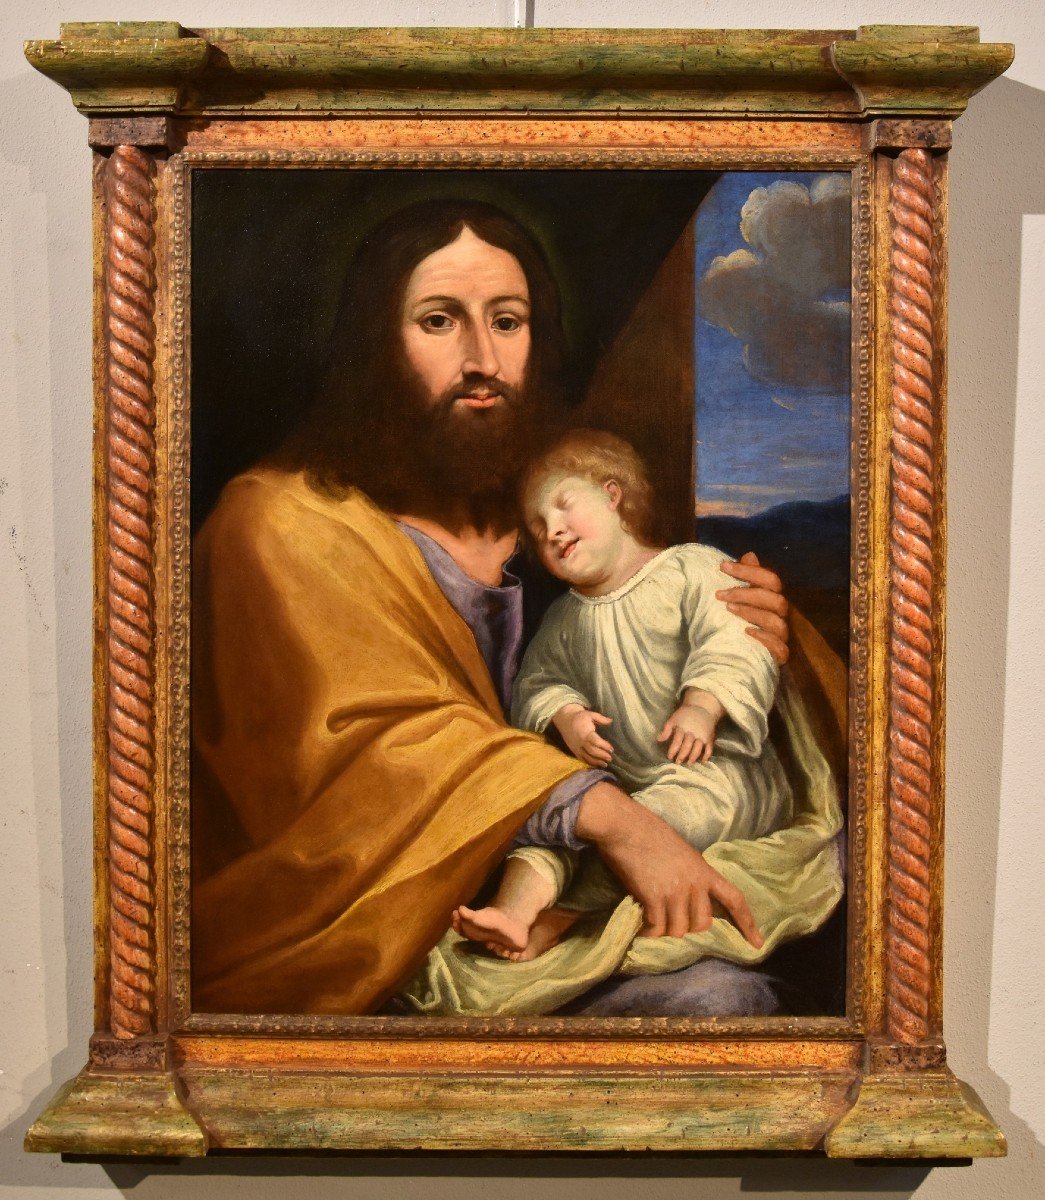  Gesù con il figlio del committente, Giovan Battista Salvi (1609 - 1685) cerchia/seguace-photo-2